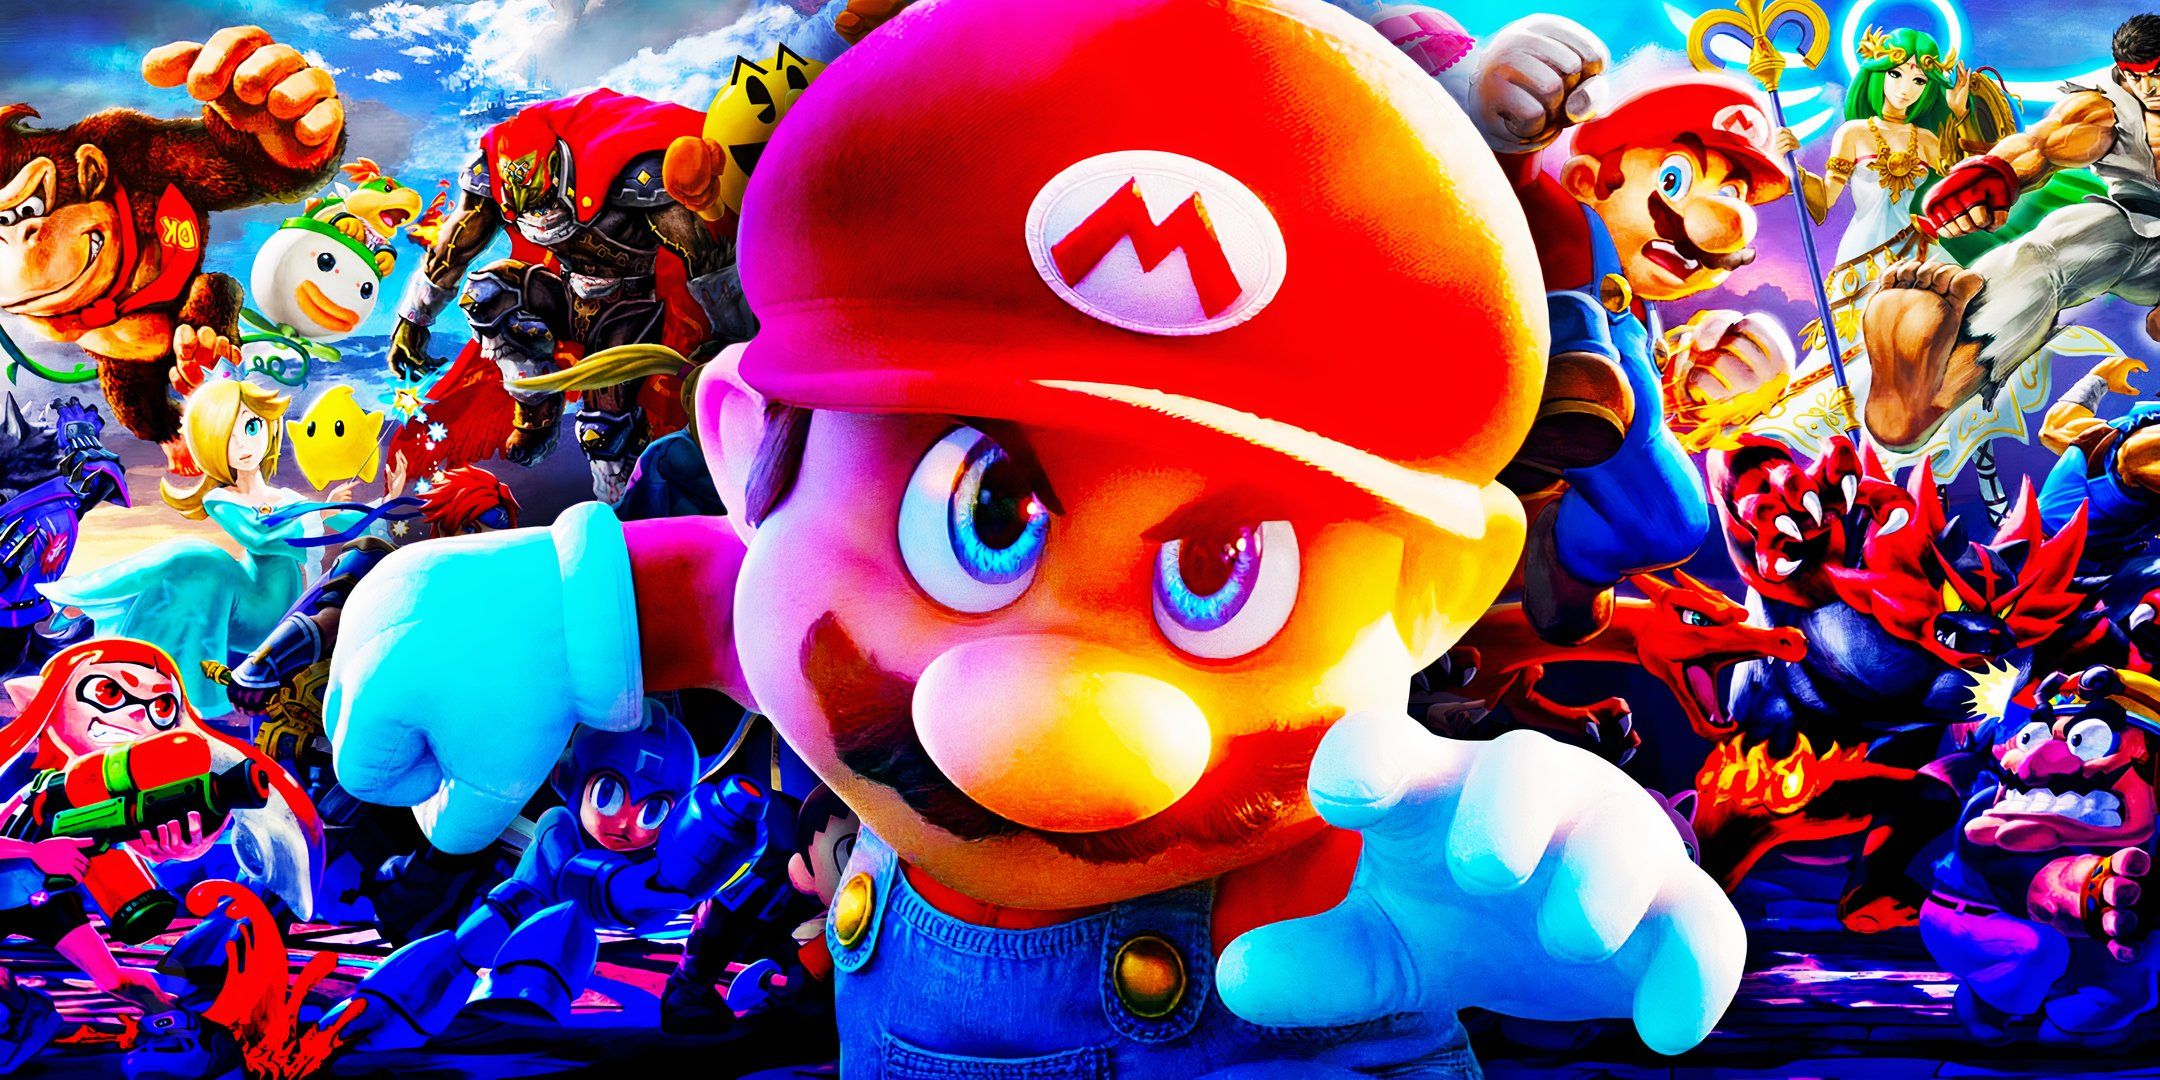 10 historias de videojuegos cruzados de Nintendo que pueden cumplir con el adelanto del “Universo cinematográfico” de Super Mario Bros 2